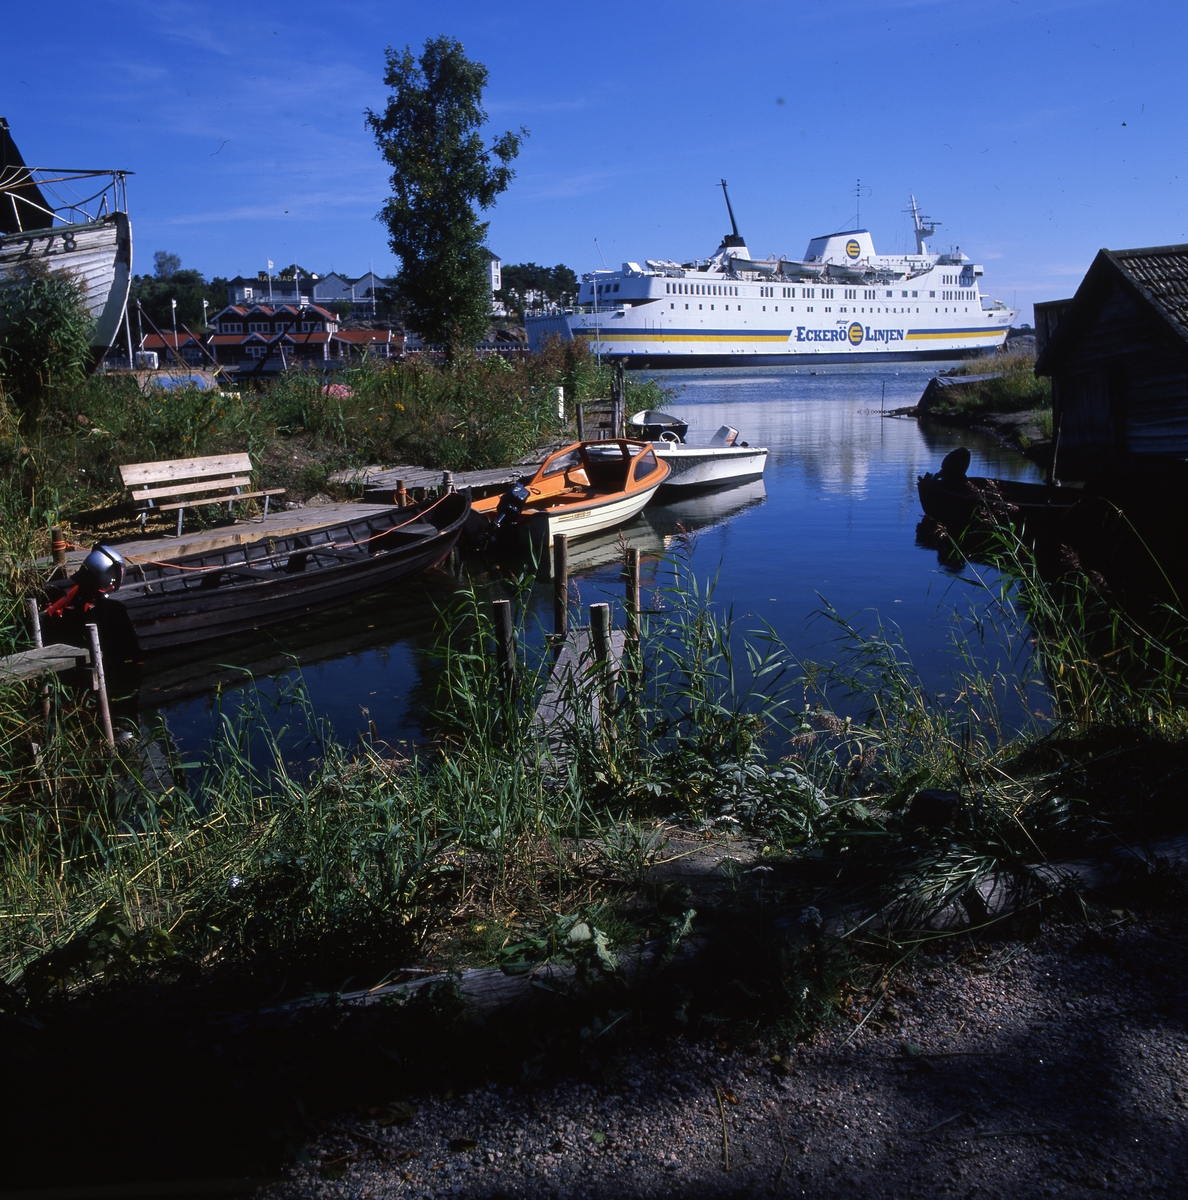 Fogdö, en ö i norra Roslagen, 2-3 september 1999.  Här ser vi färjan, några båtar vid en brygga och byggnader i bakgrunden.